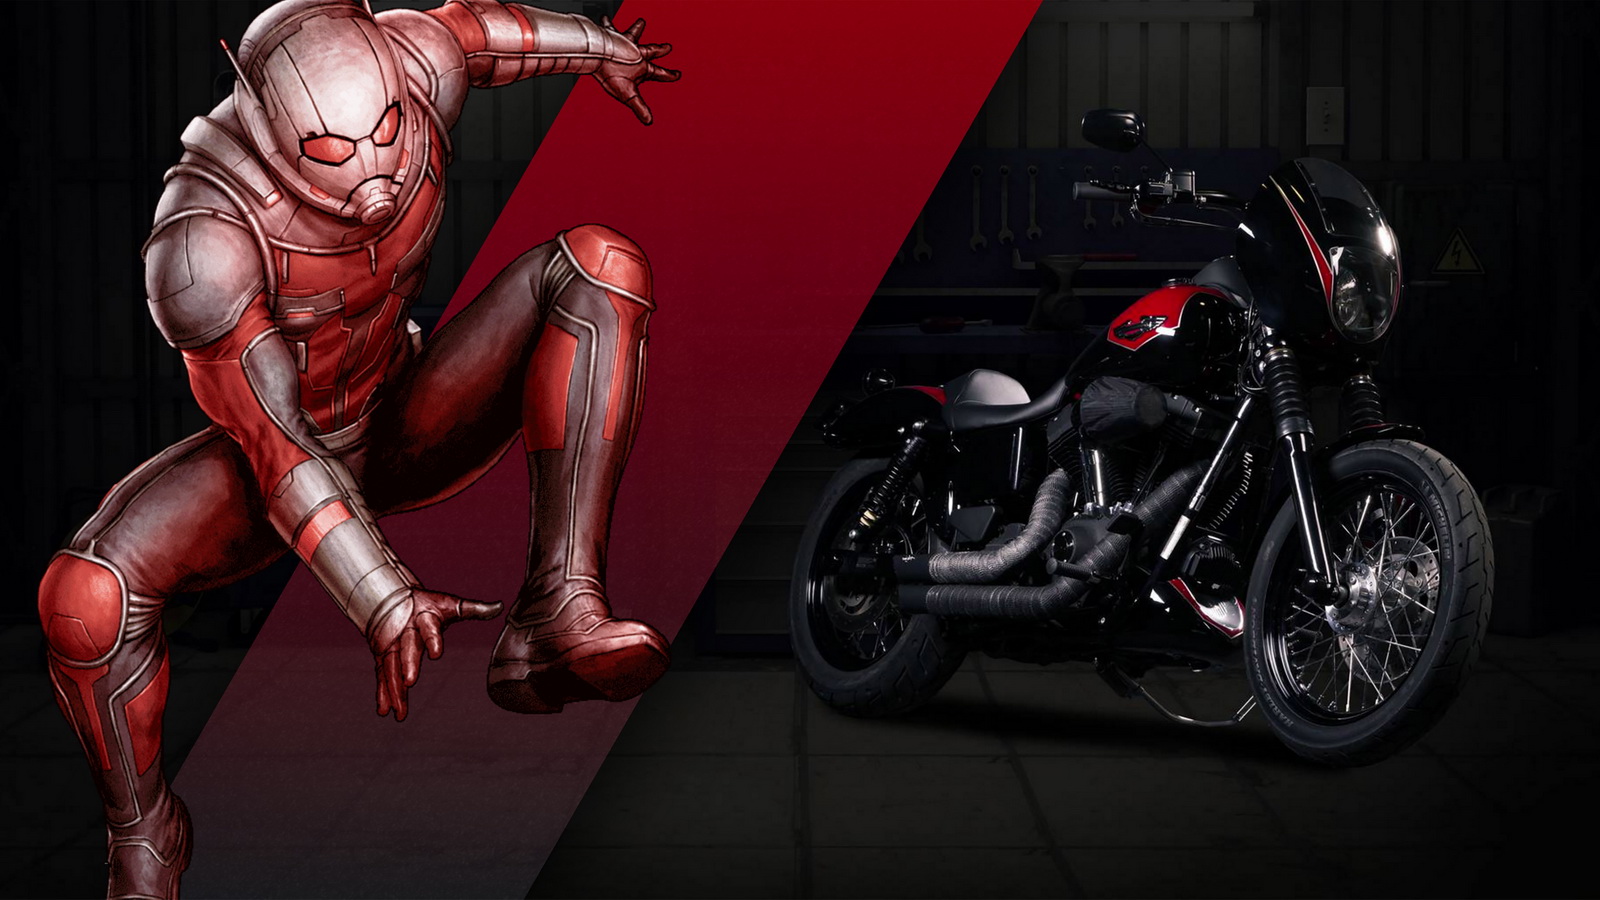 Harley Davidson Ant-Man